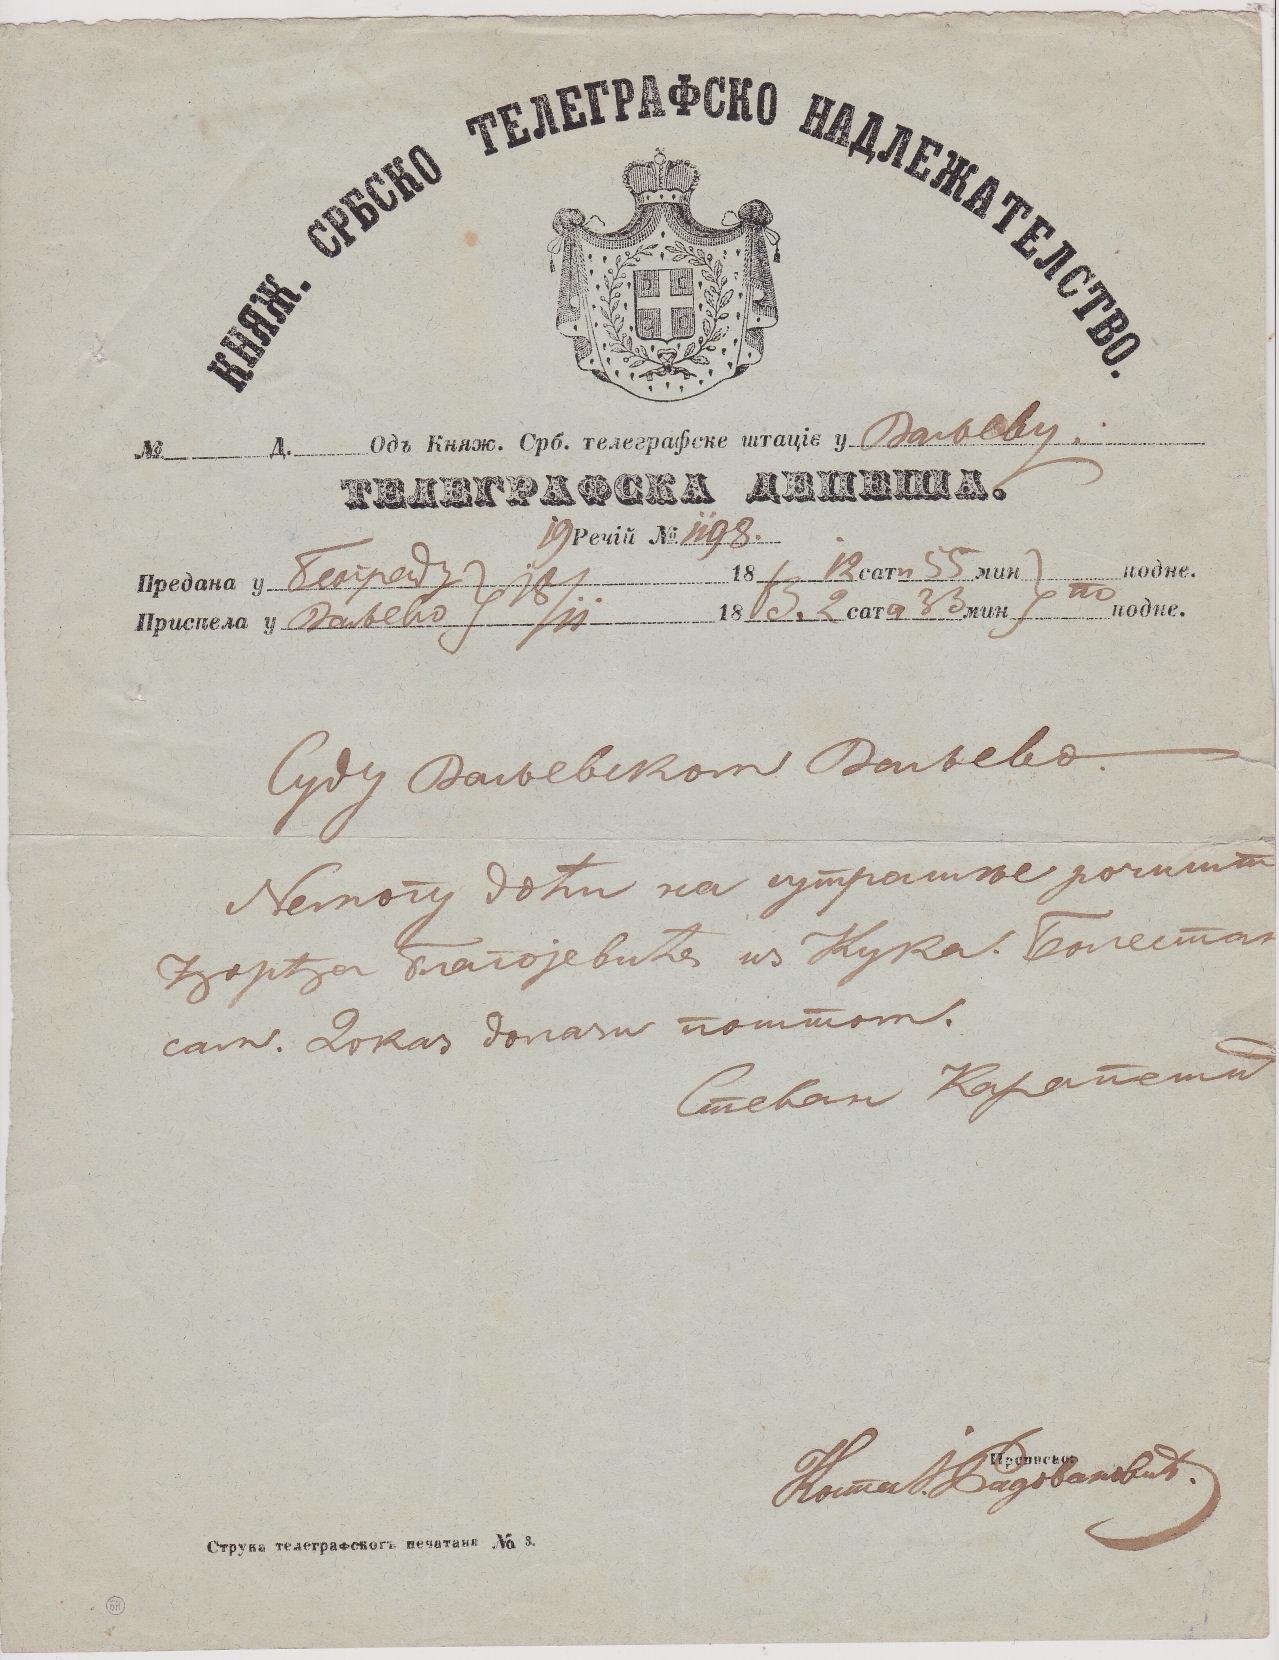 Serbia telegram of 1863